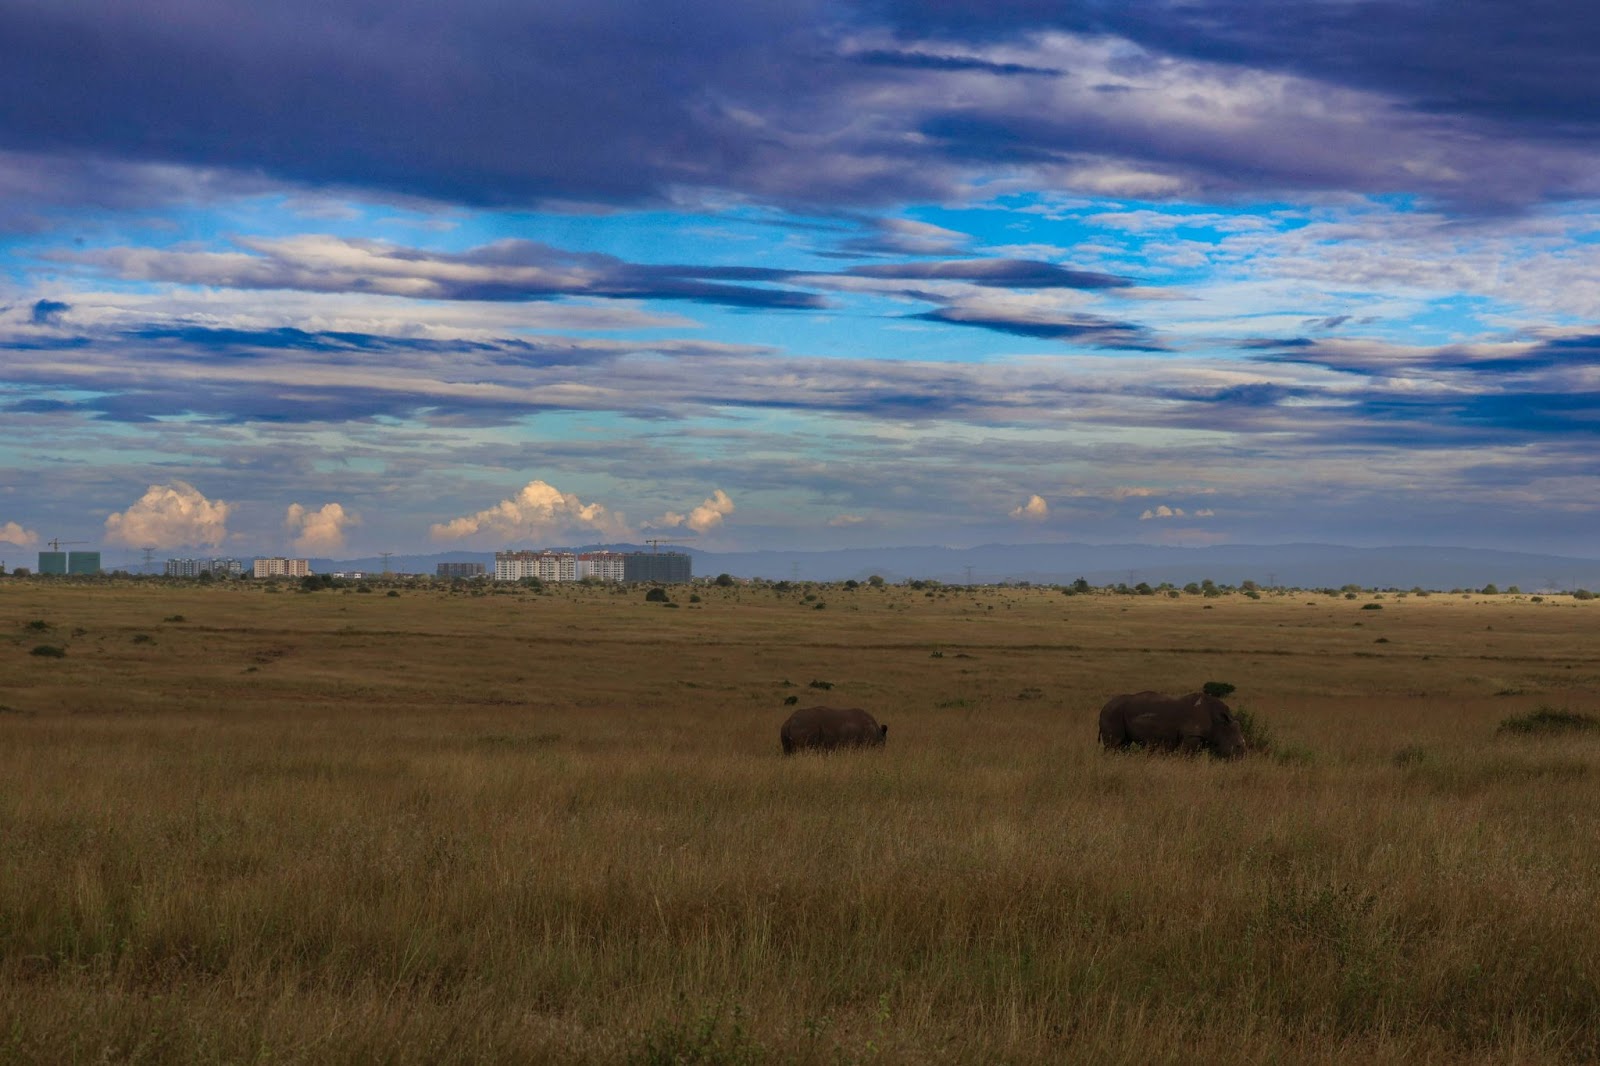 Visit the national parks in Kenya.
pictured: a national park in Kenya